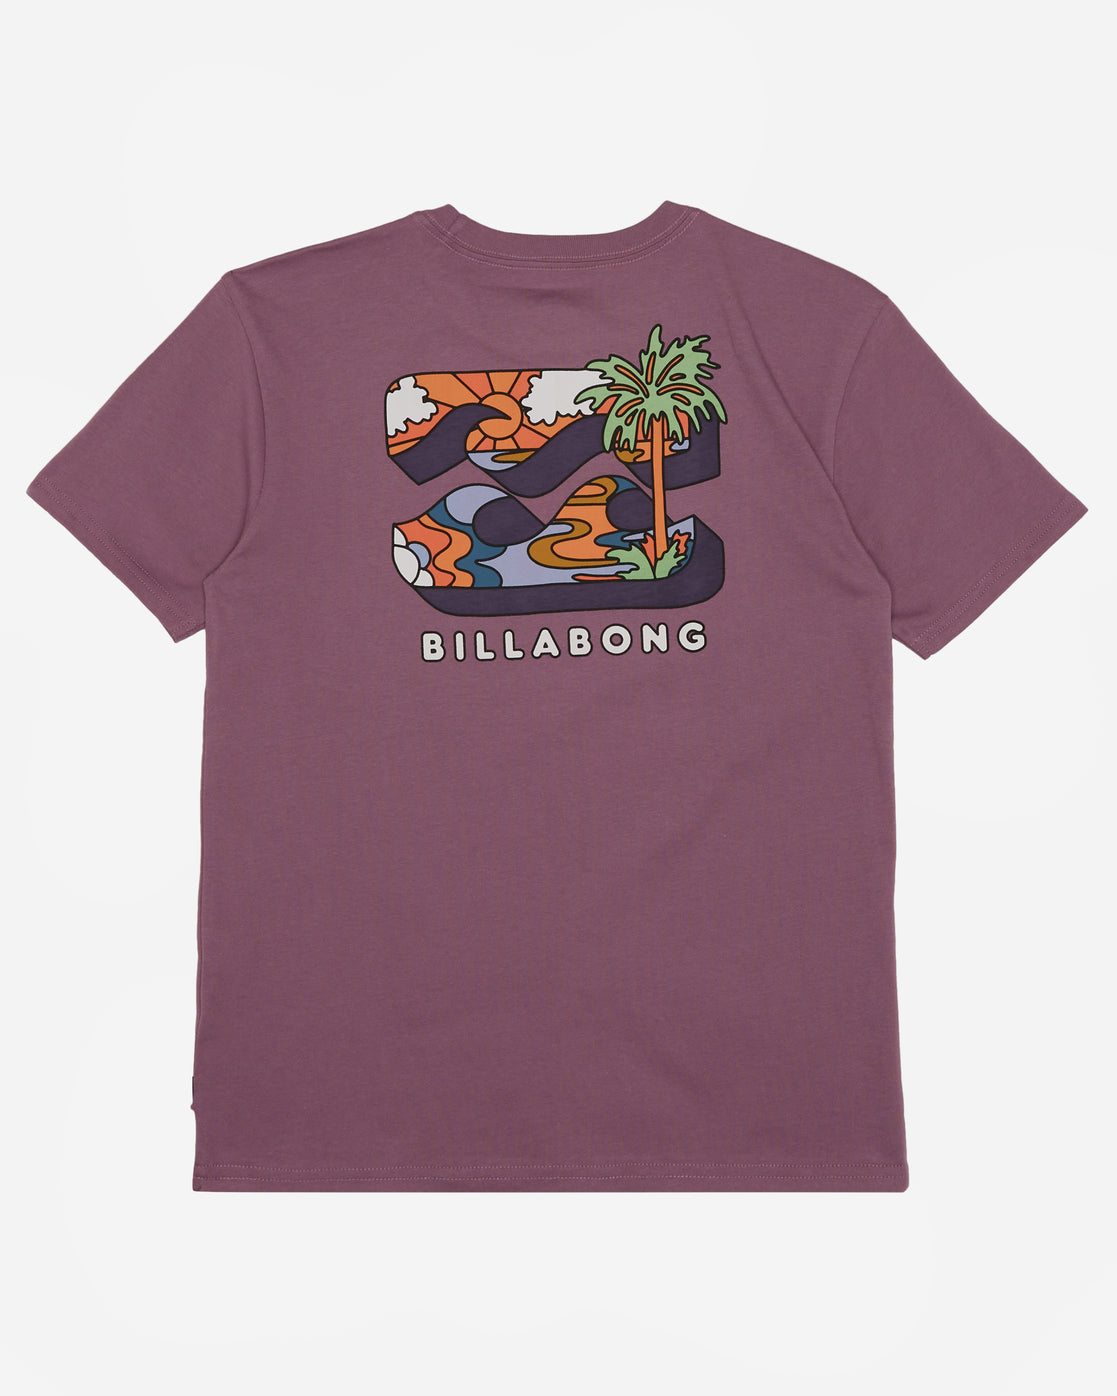 Billabong BBTV Boys T-Shirt in Plum